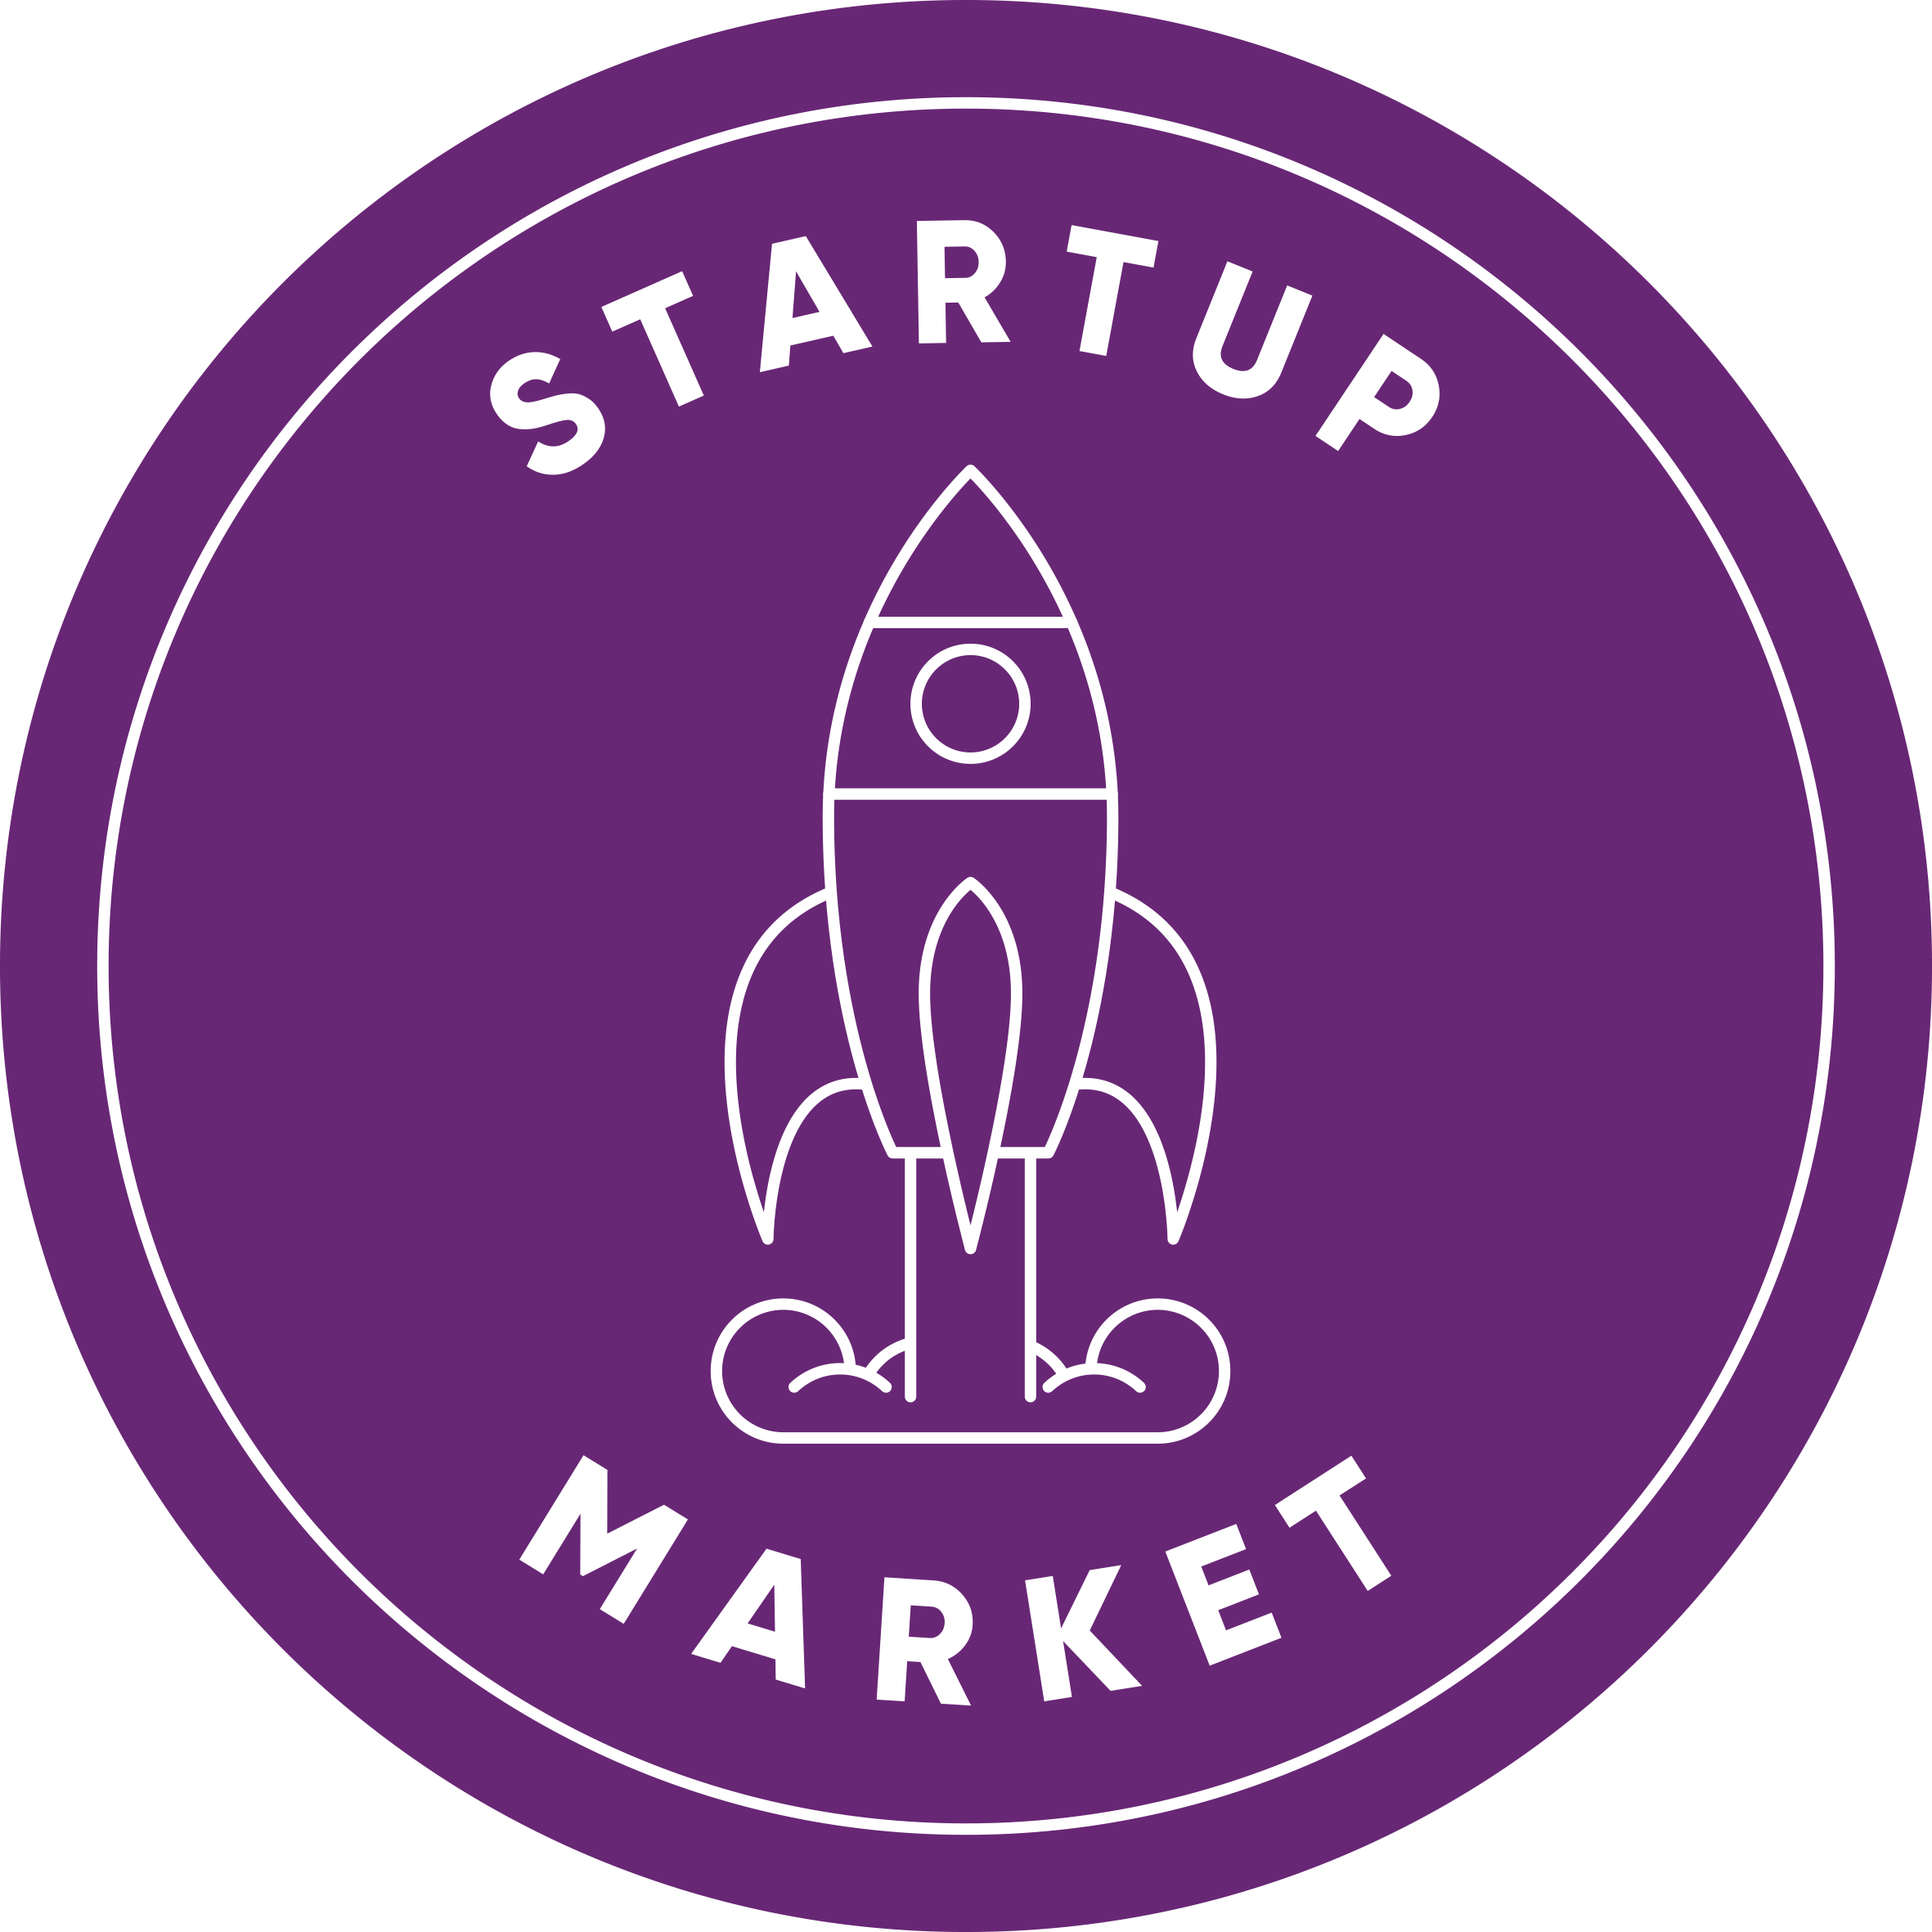 Startup Market